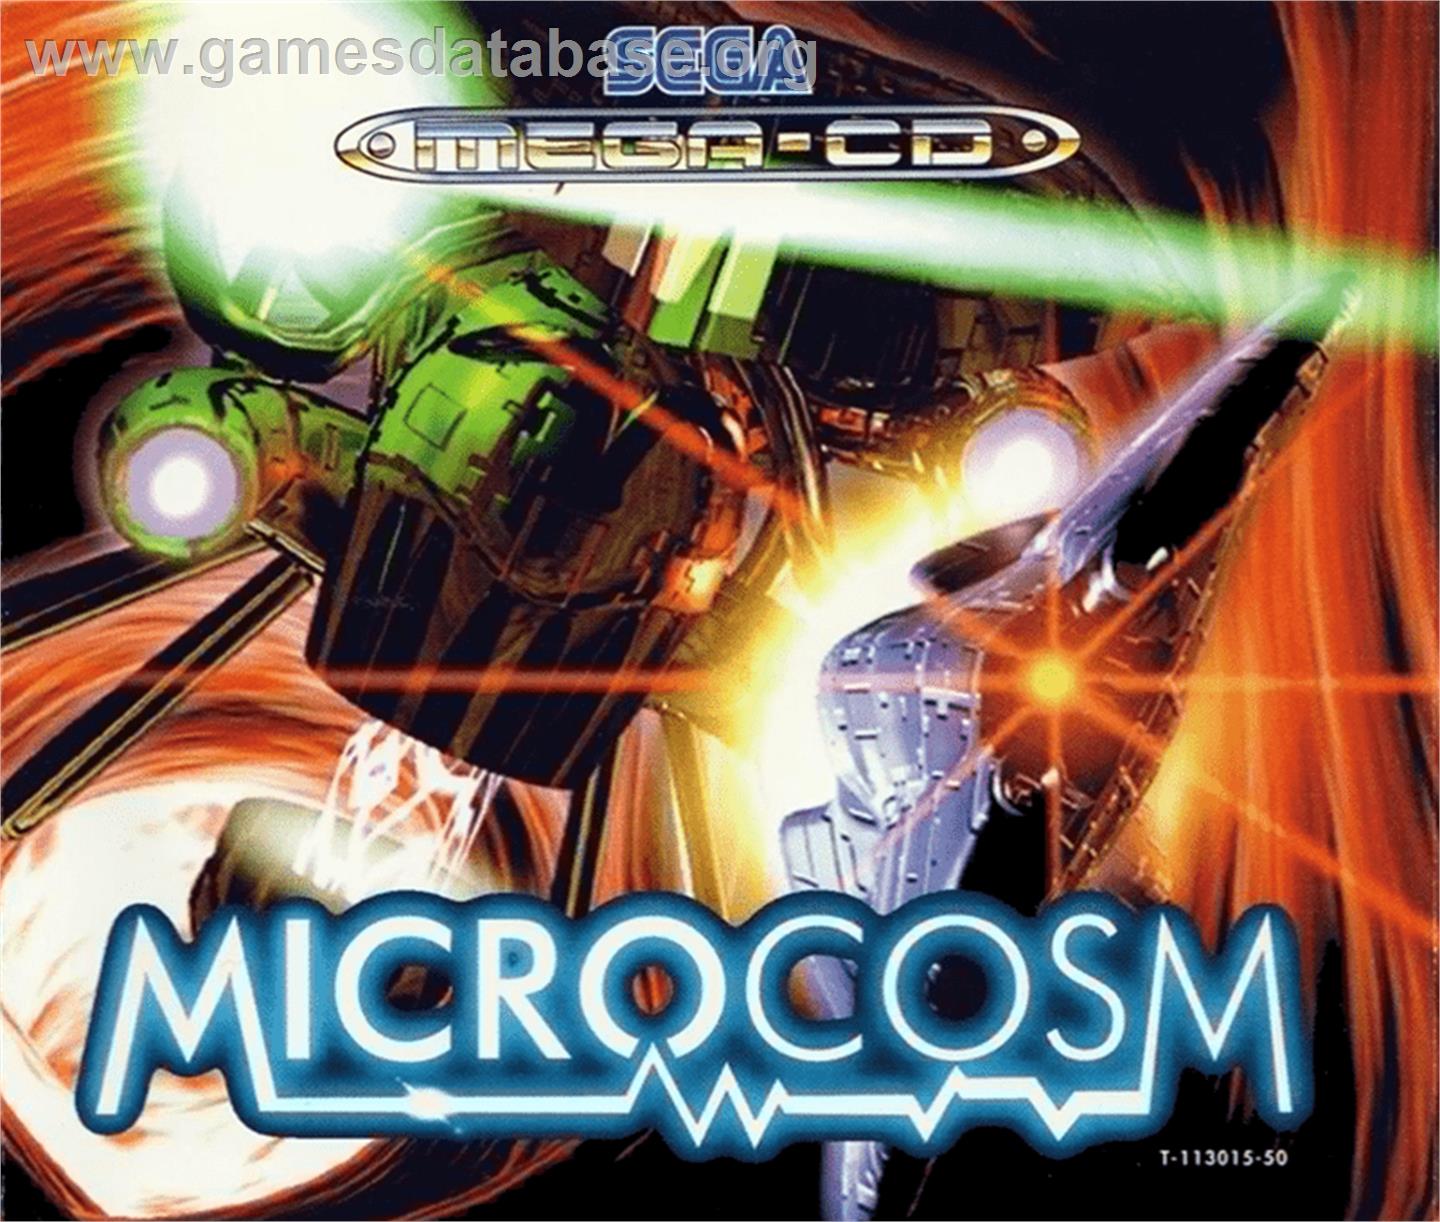 Microcosm - Sega CD - Artwork - Box